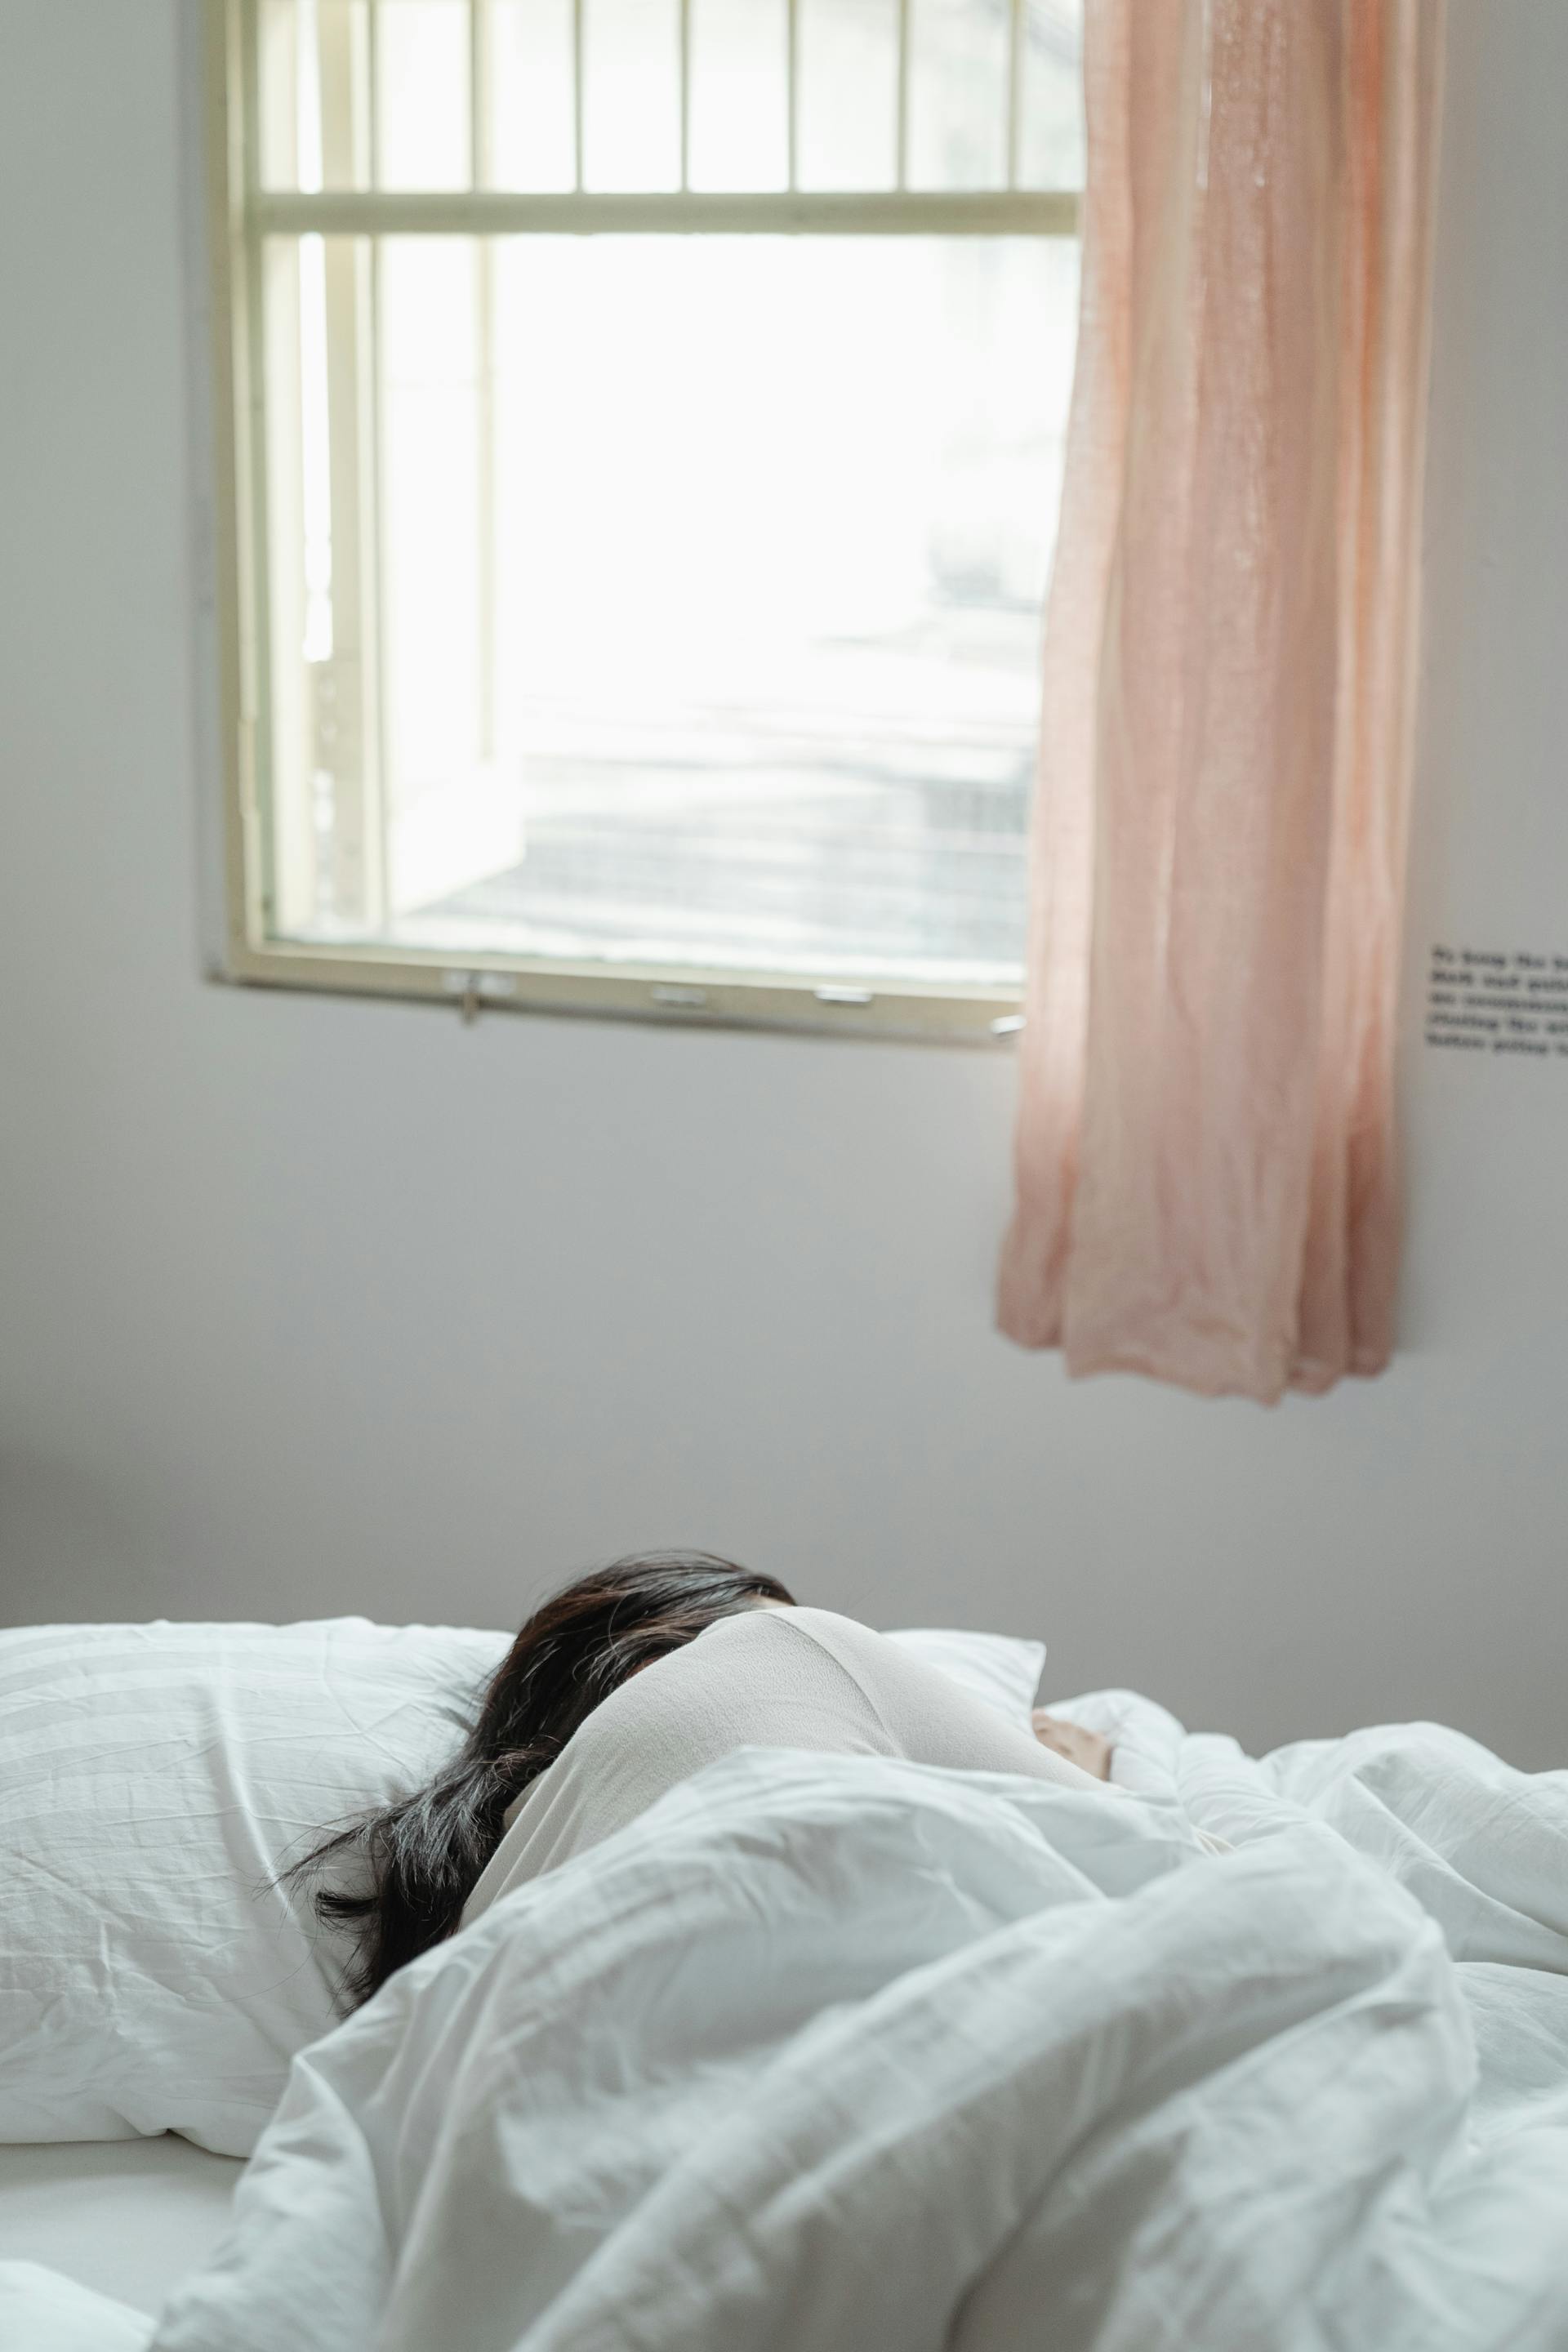 Une personne qui dort dans son lit | Source : Pexels